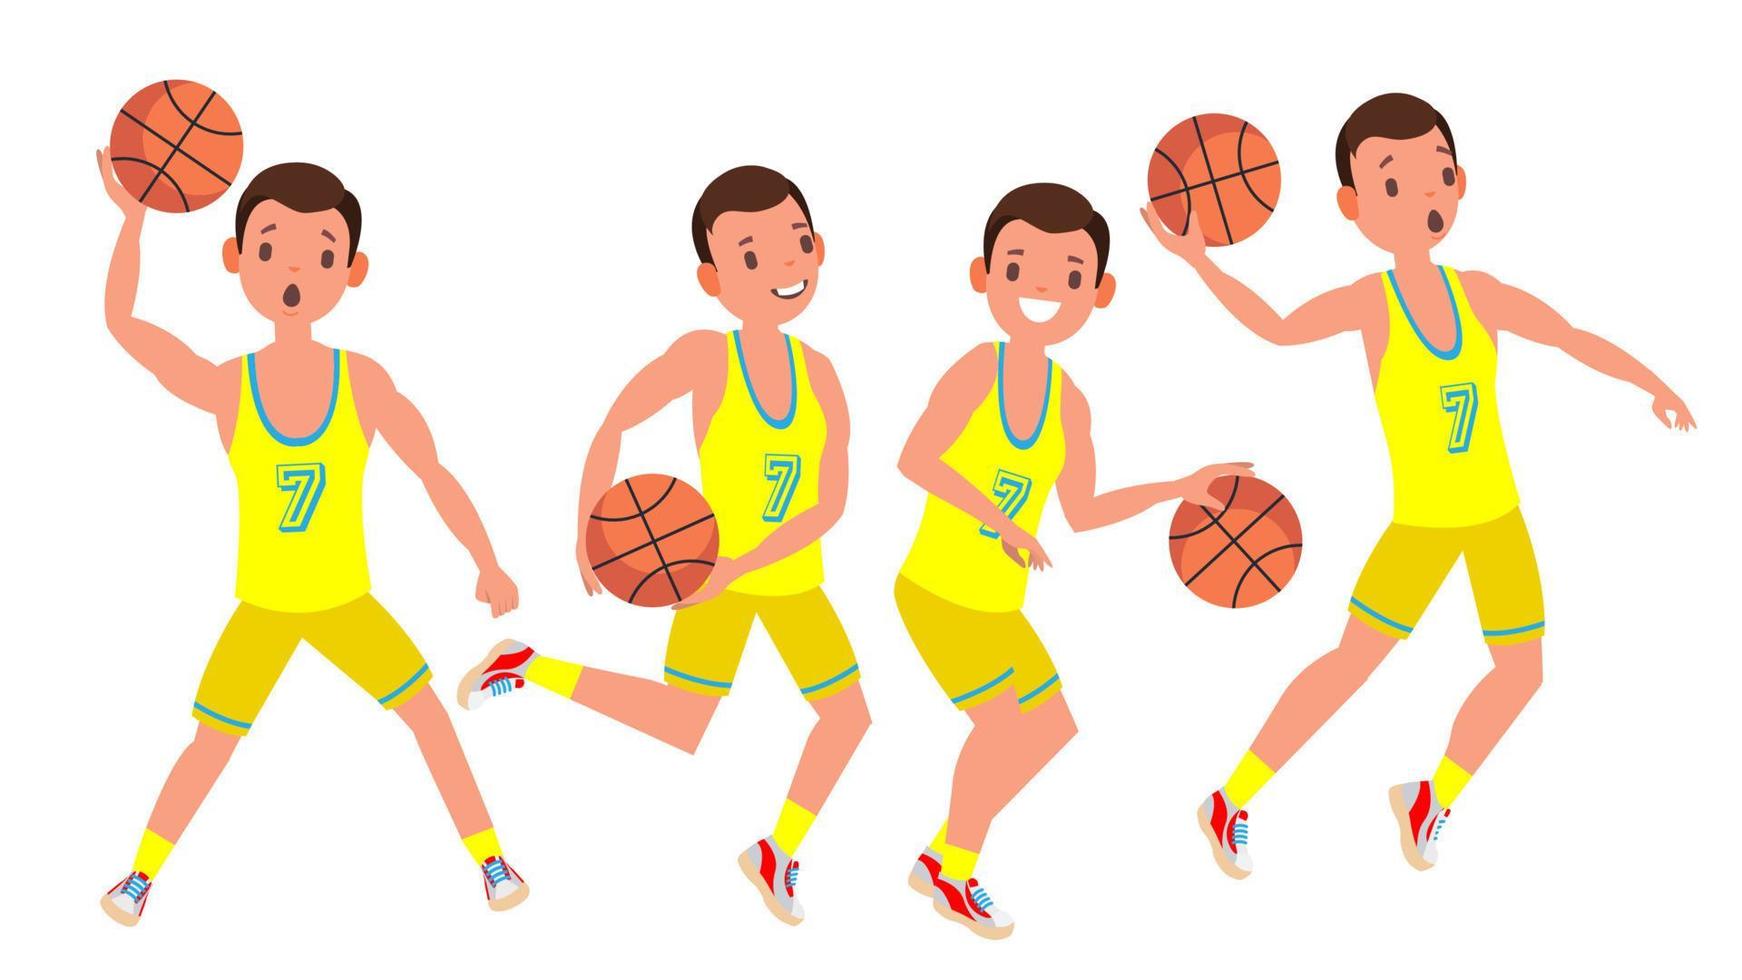 vector de hombre de jugador de baloncesto moderno. concepto deportivo. correr salto con pelota. competición de juegos deportivos. aislado en blanco ilustración de personaje de dibujos animados